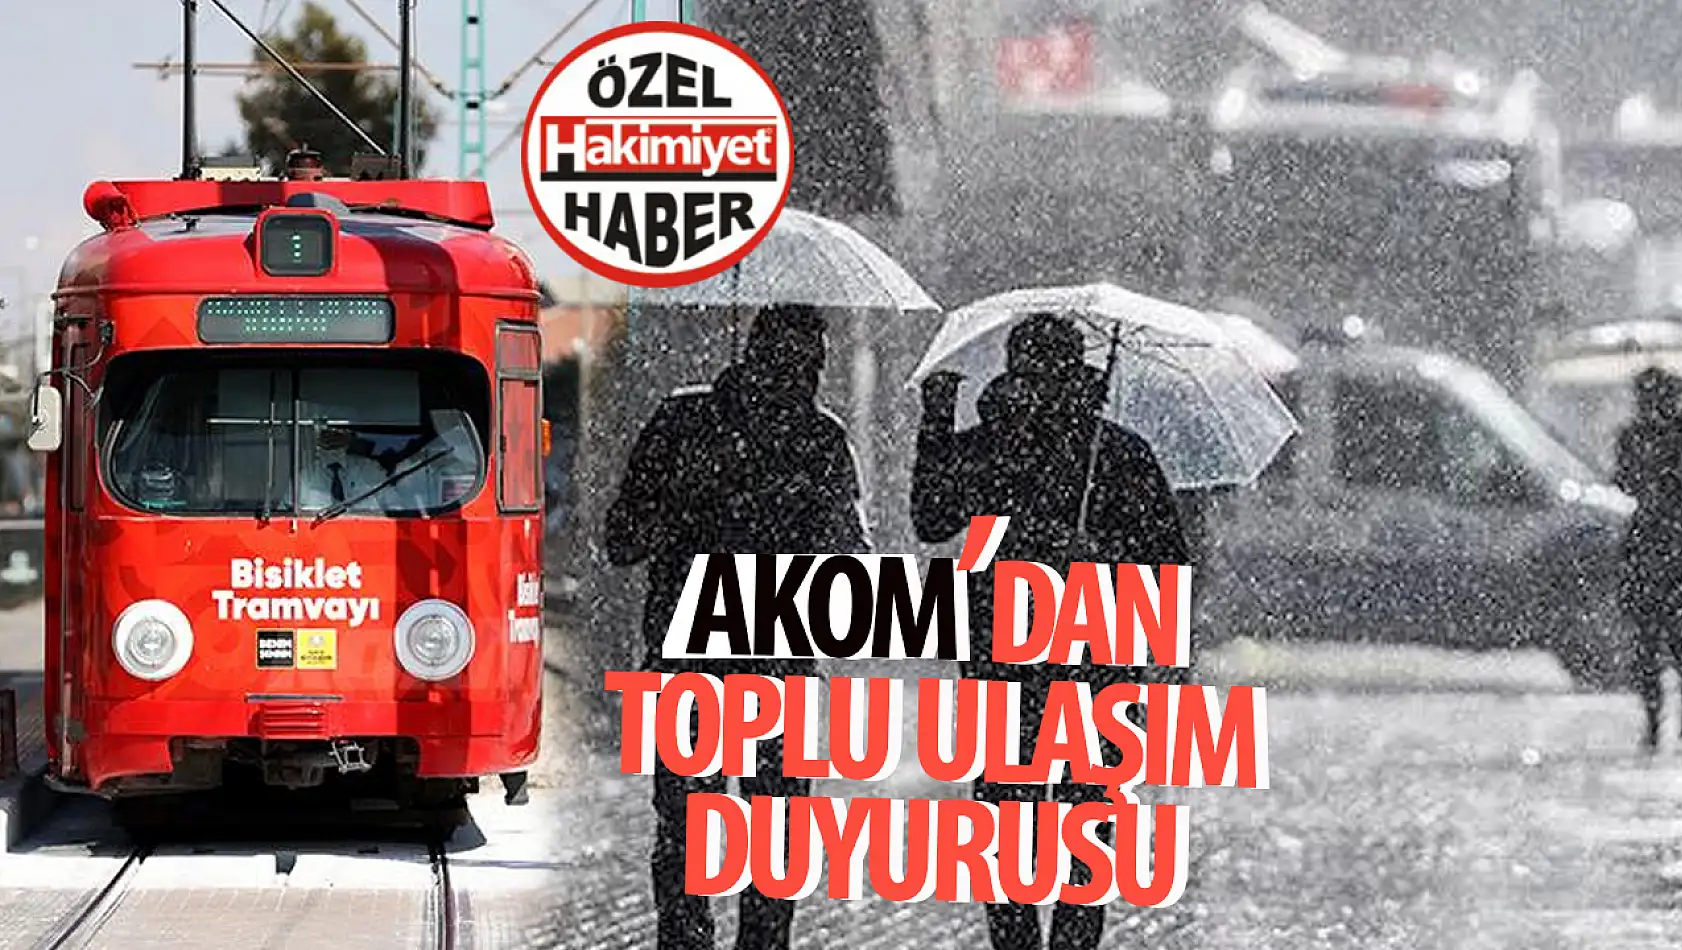 Konya Büyükşehir Belediyesi AKOM'dan Sağanak Yağış Uyarısı